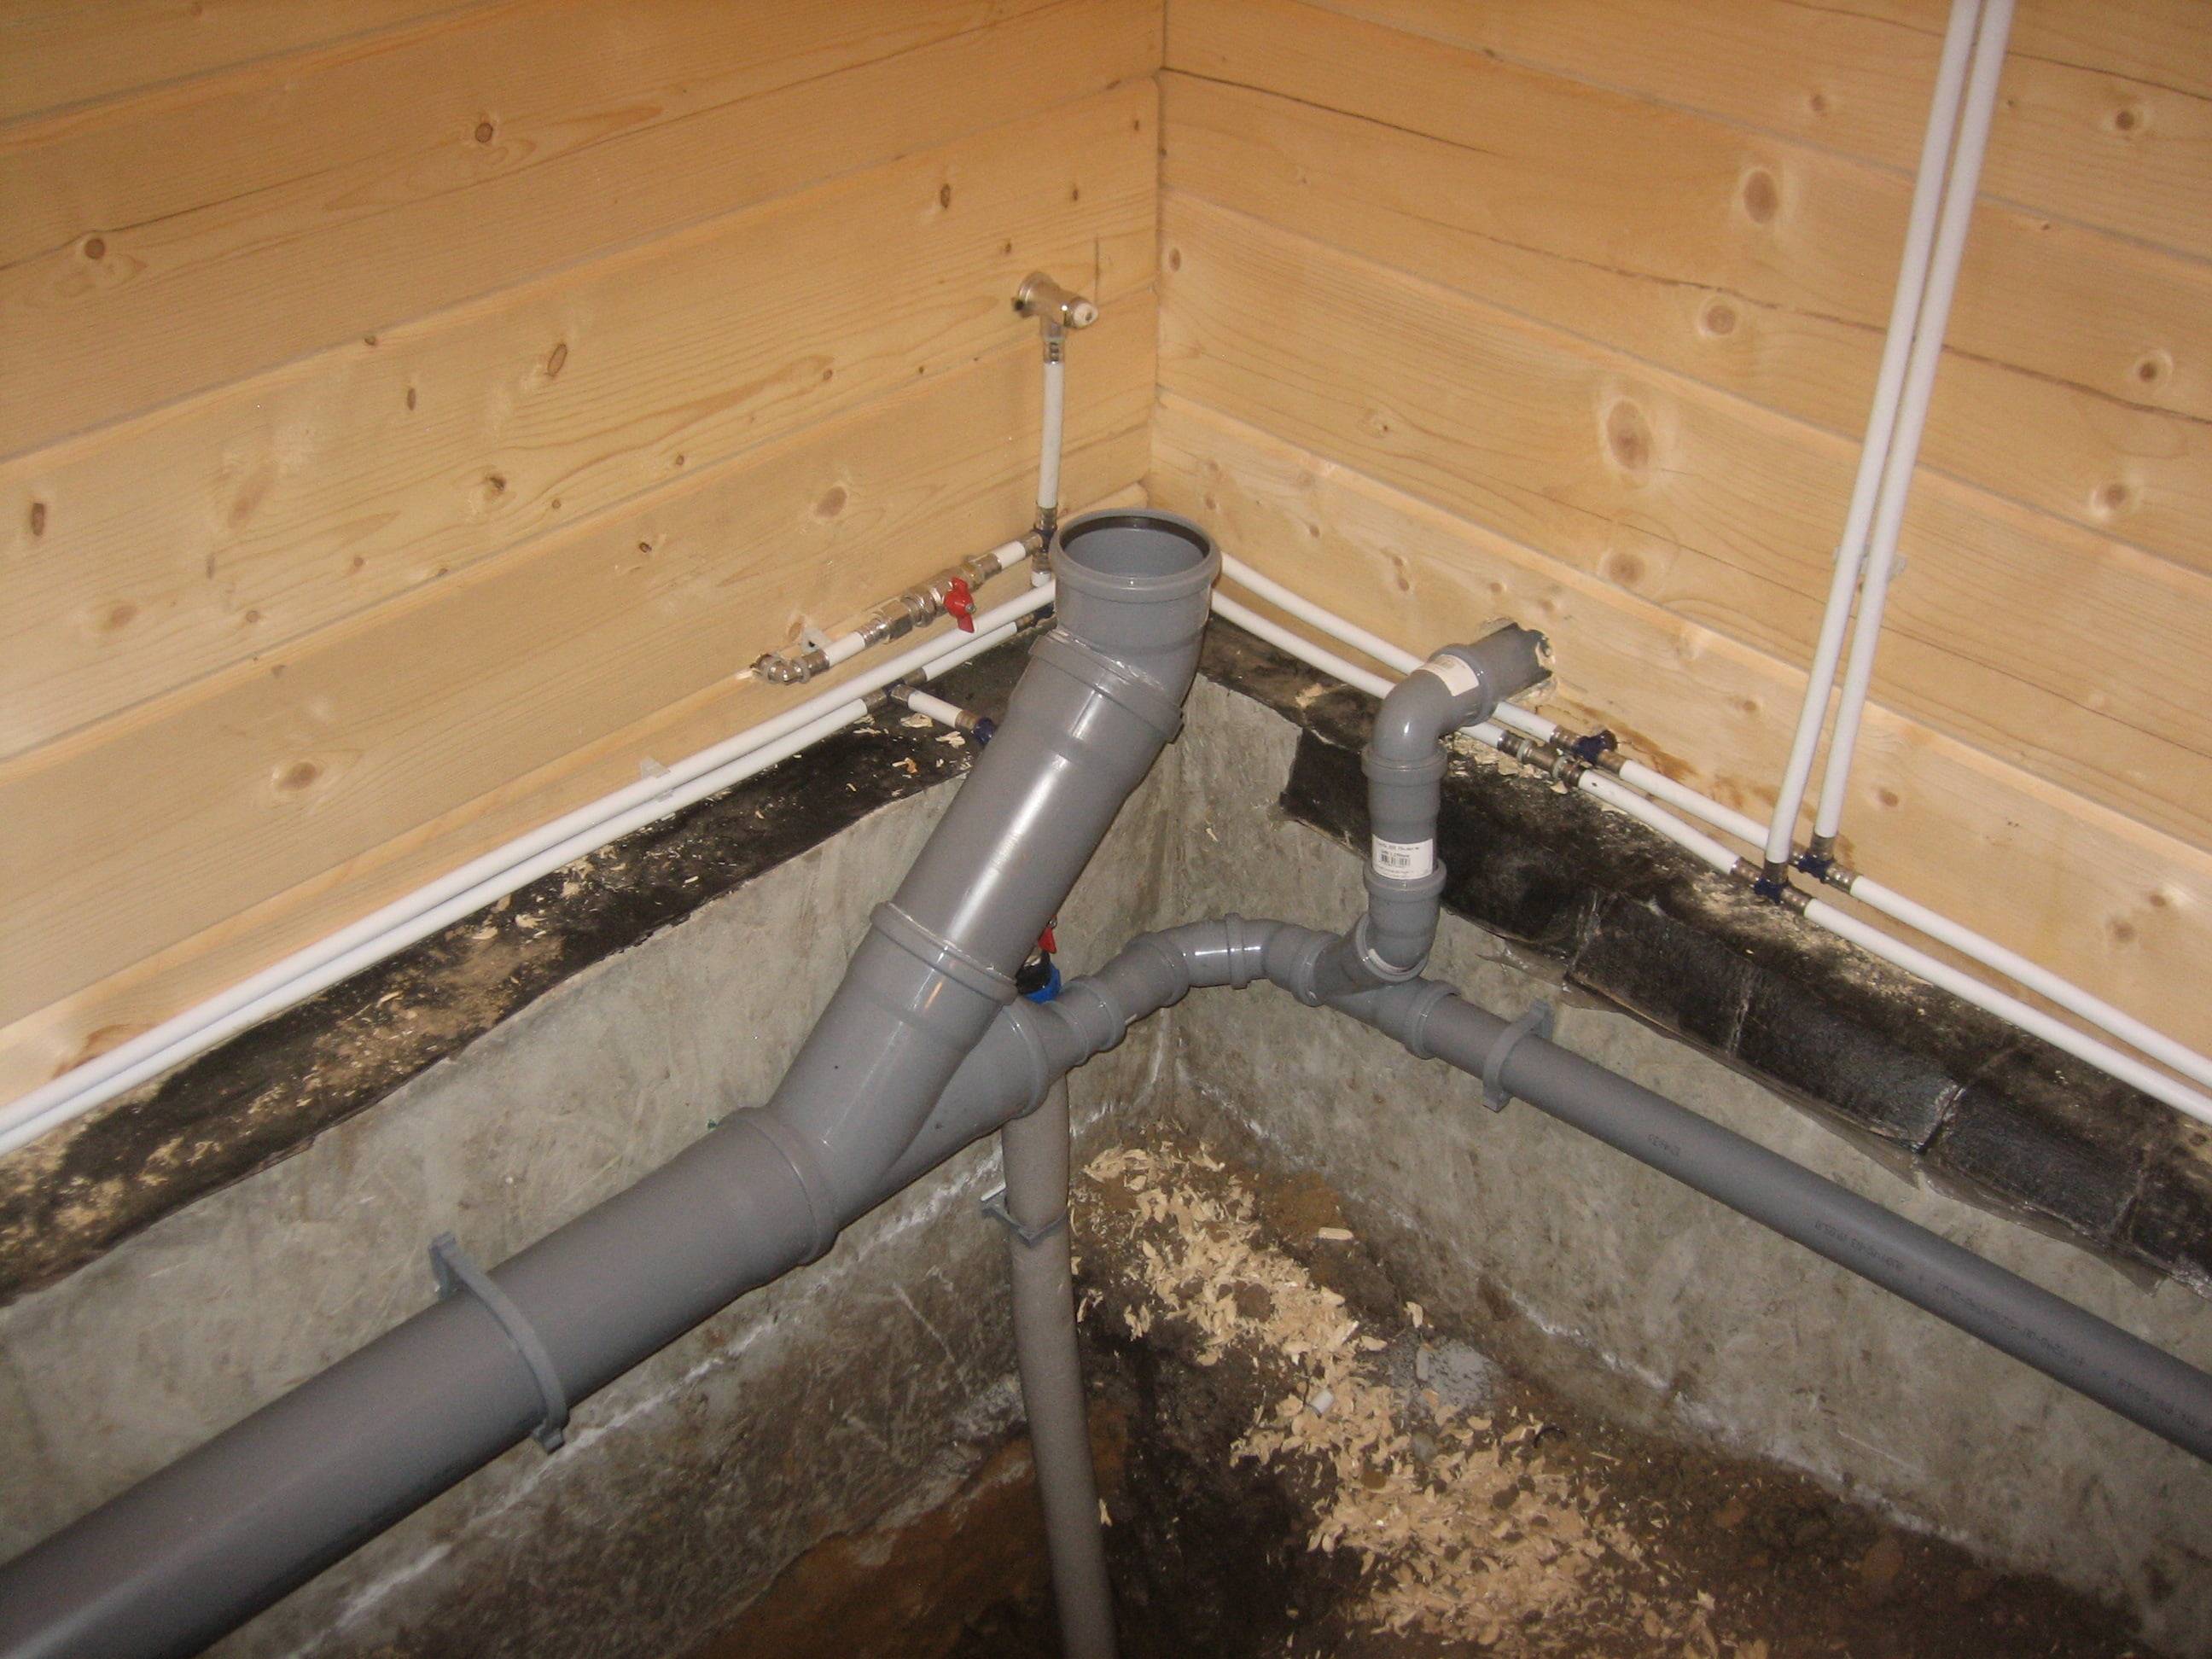 Вентиляция канализации: нужна ли она в частном доме, и по какой схеме ее делать?